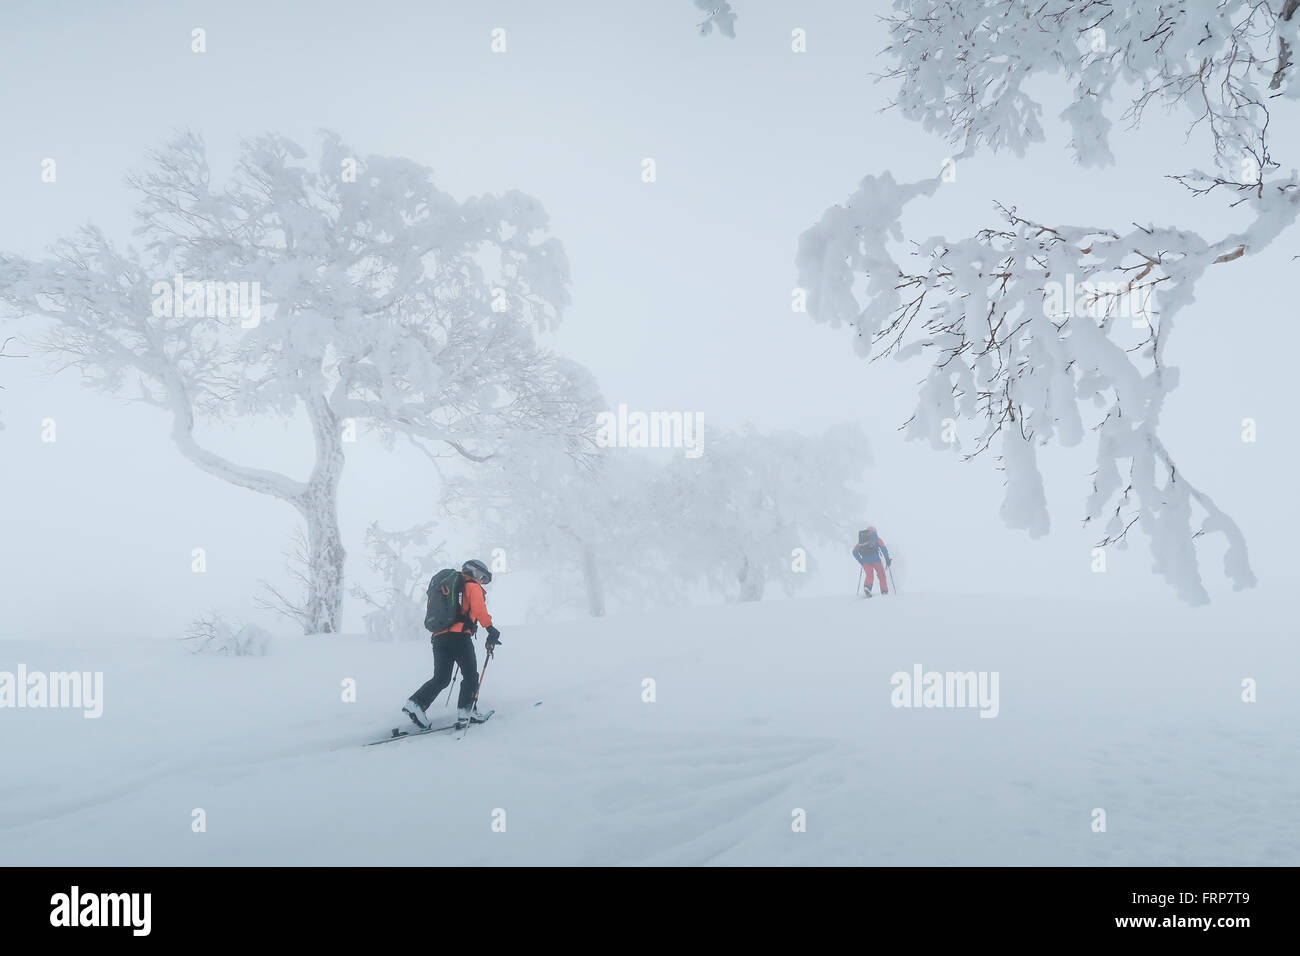 Deux randonneurs sont la randonnée à travers un paysage de montagne brumeuse avec arbres couverts de neige près de la station de ski de Kiroro Skiing sur Hokaido, au Japon. Banque D'Images